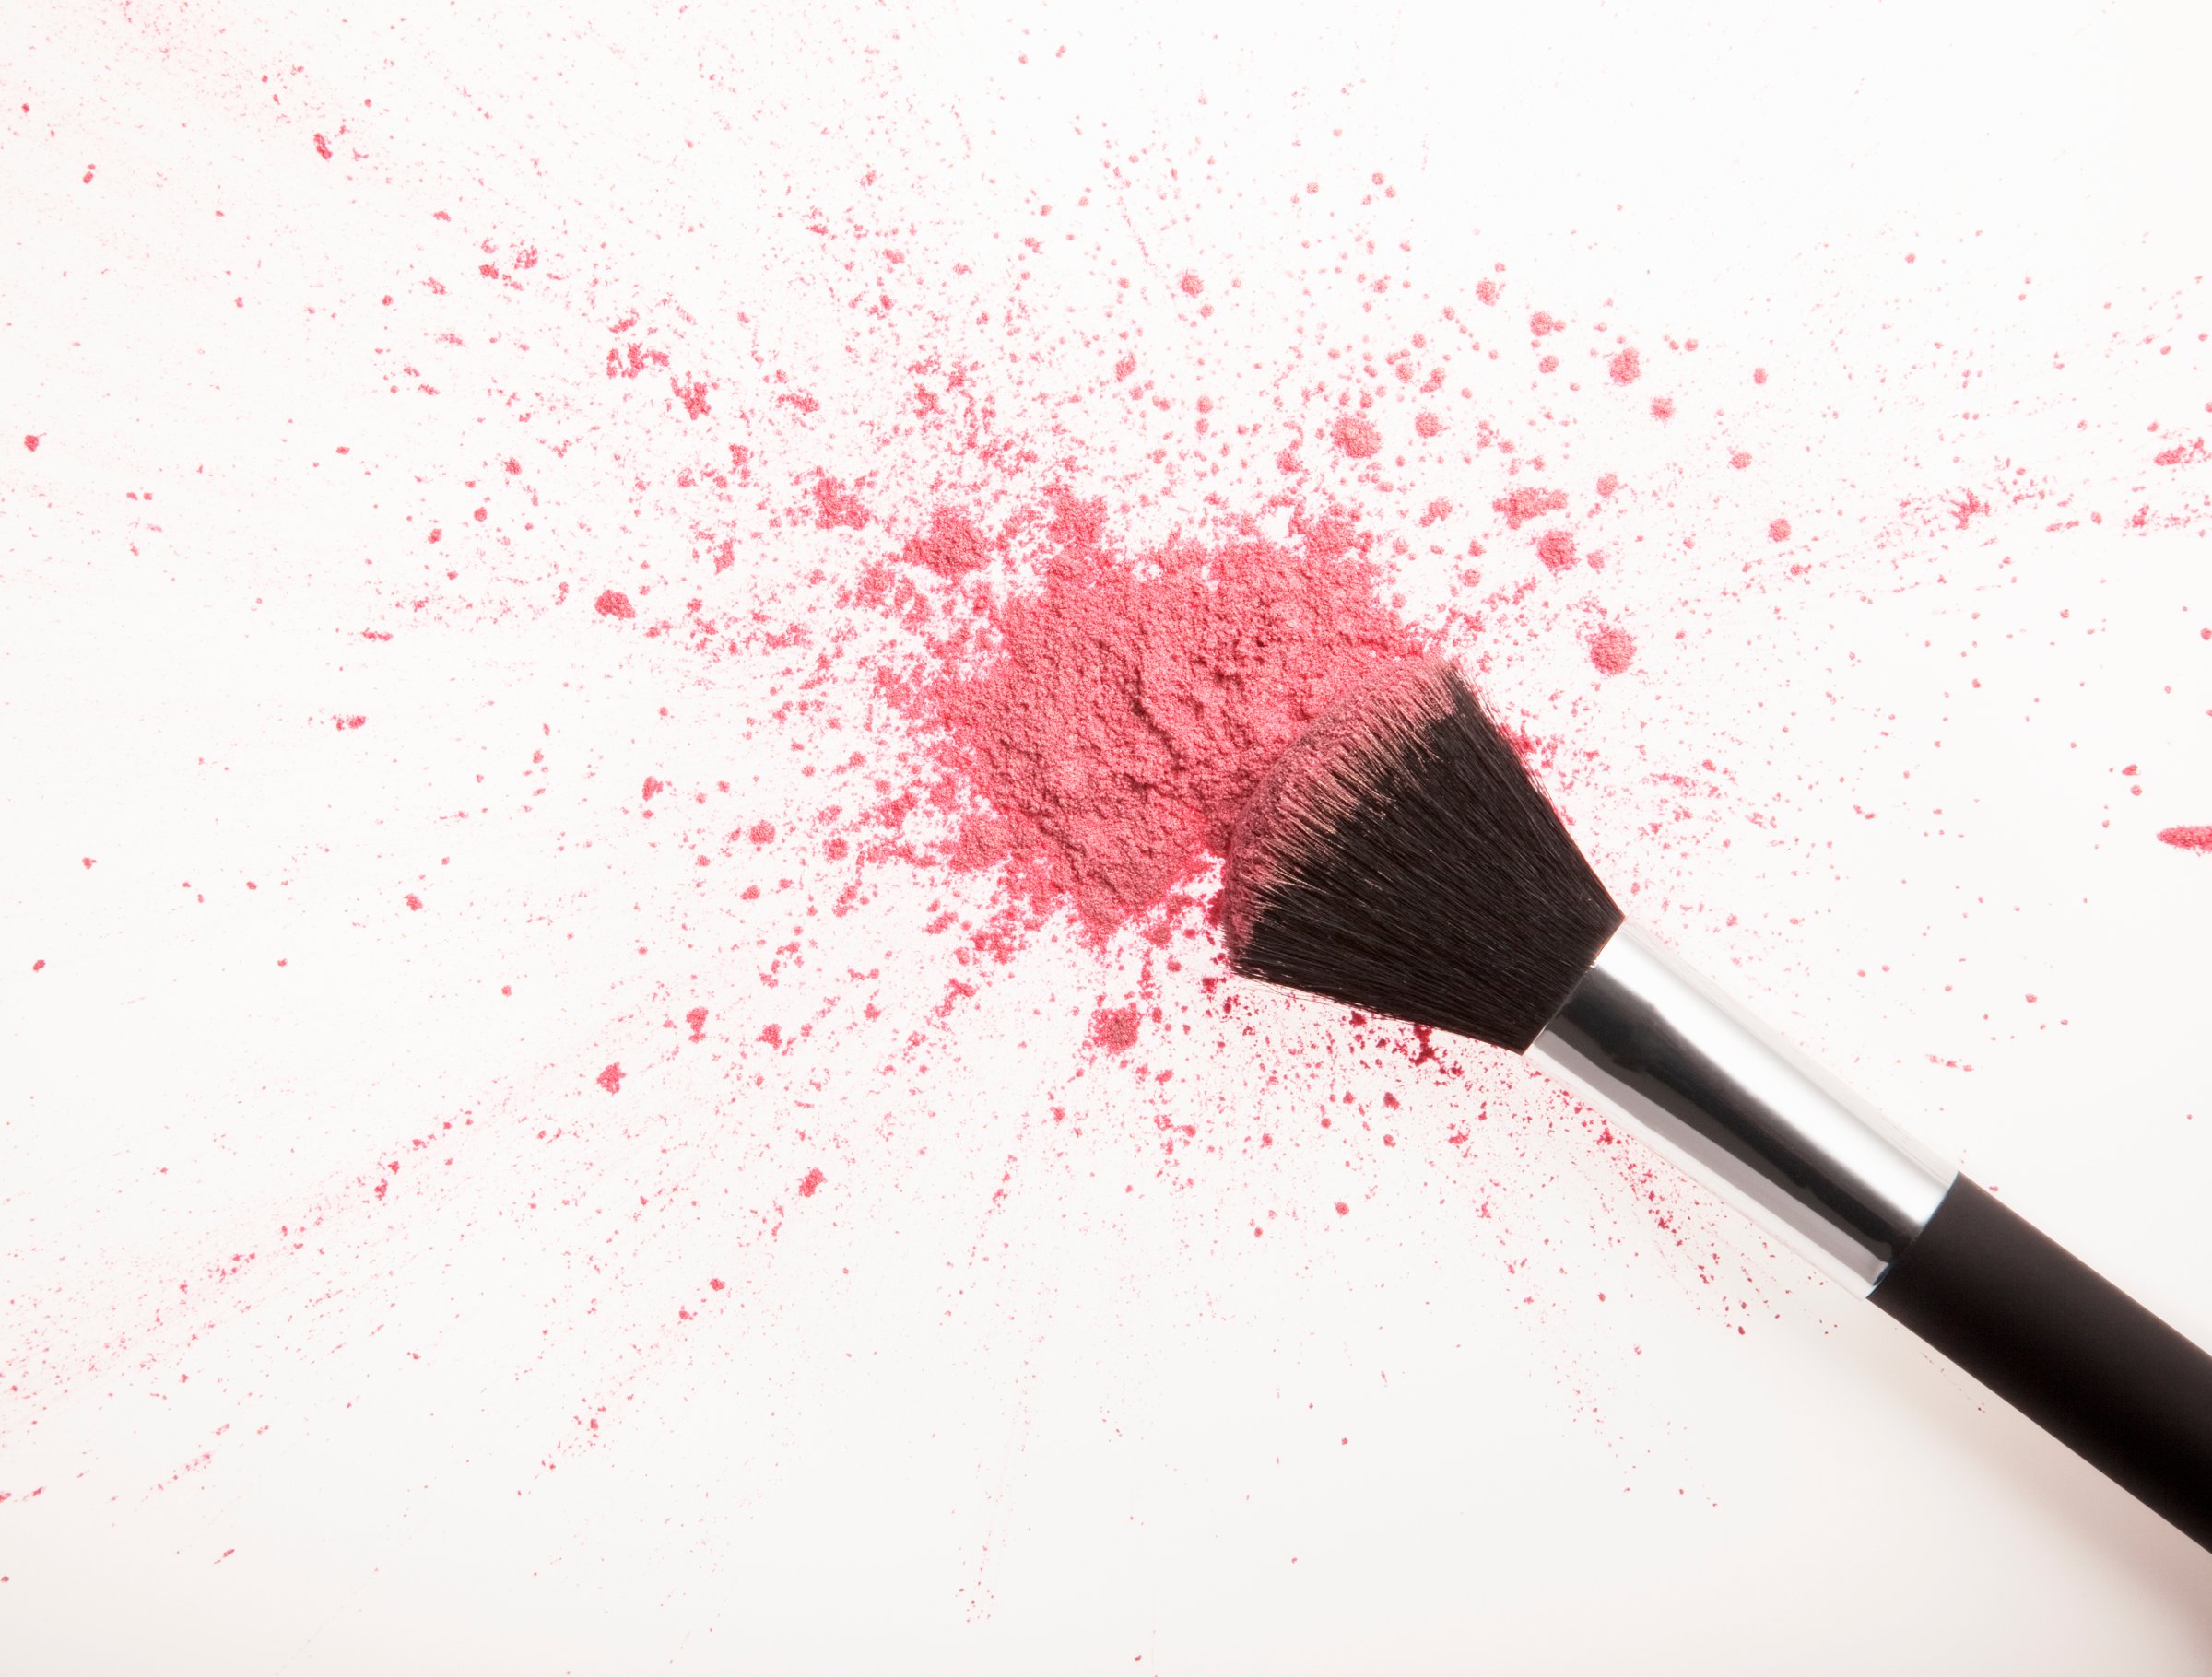 Makeup brush and pink blush powder splatter